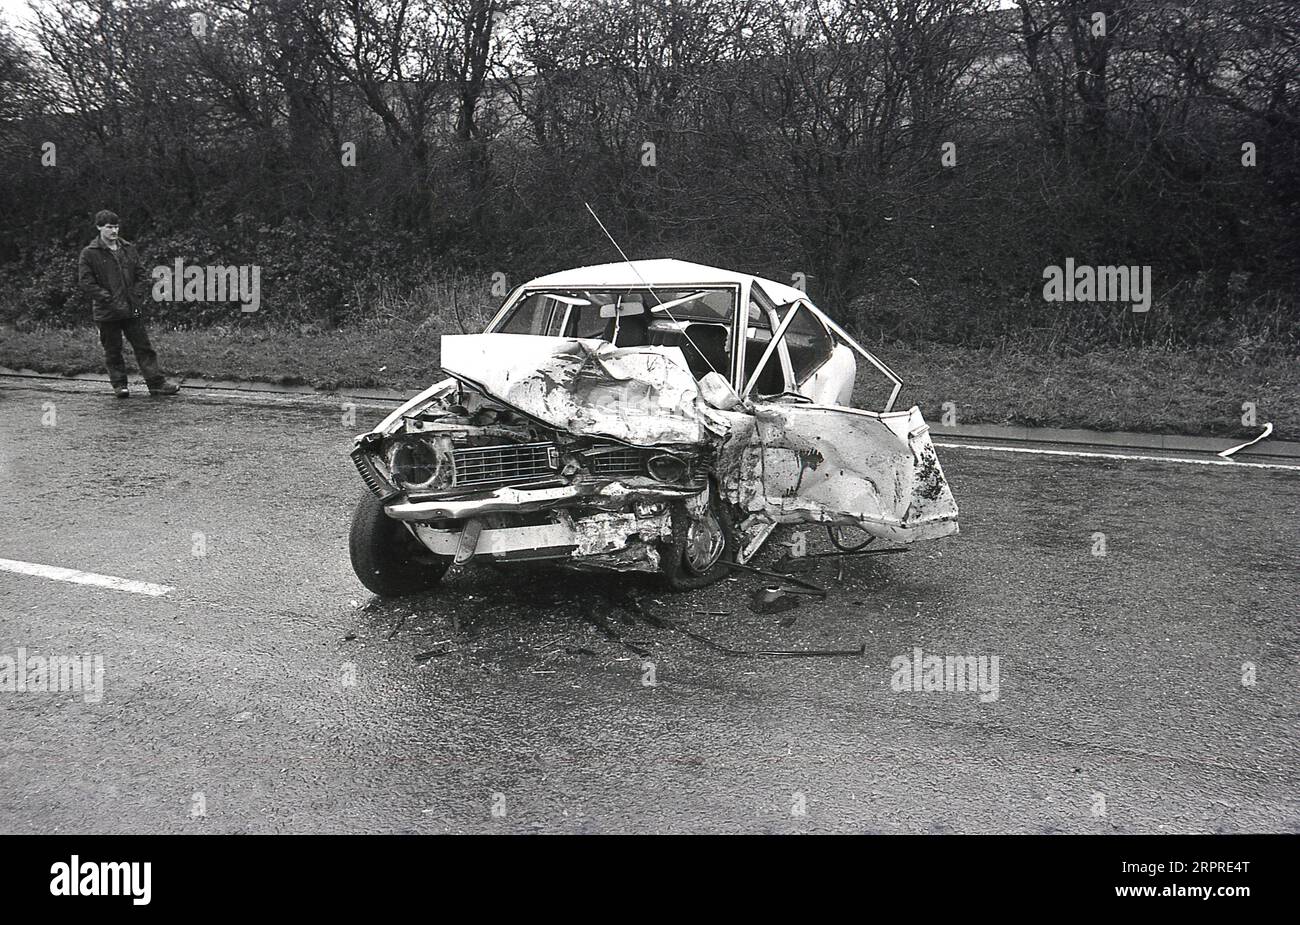 1983, historisch, ein Mann, der am Rande einer Hauptstraße stand und auf sein schwer abgestürztes Auto blickte, nachdem er an einer Kollision auf einer nassen, rutschigen Moorstraße in England, Großbritannien beteiligt war. Stockfoto